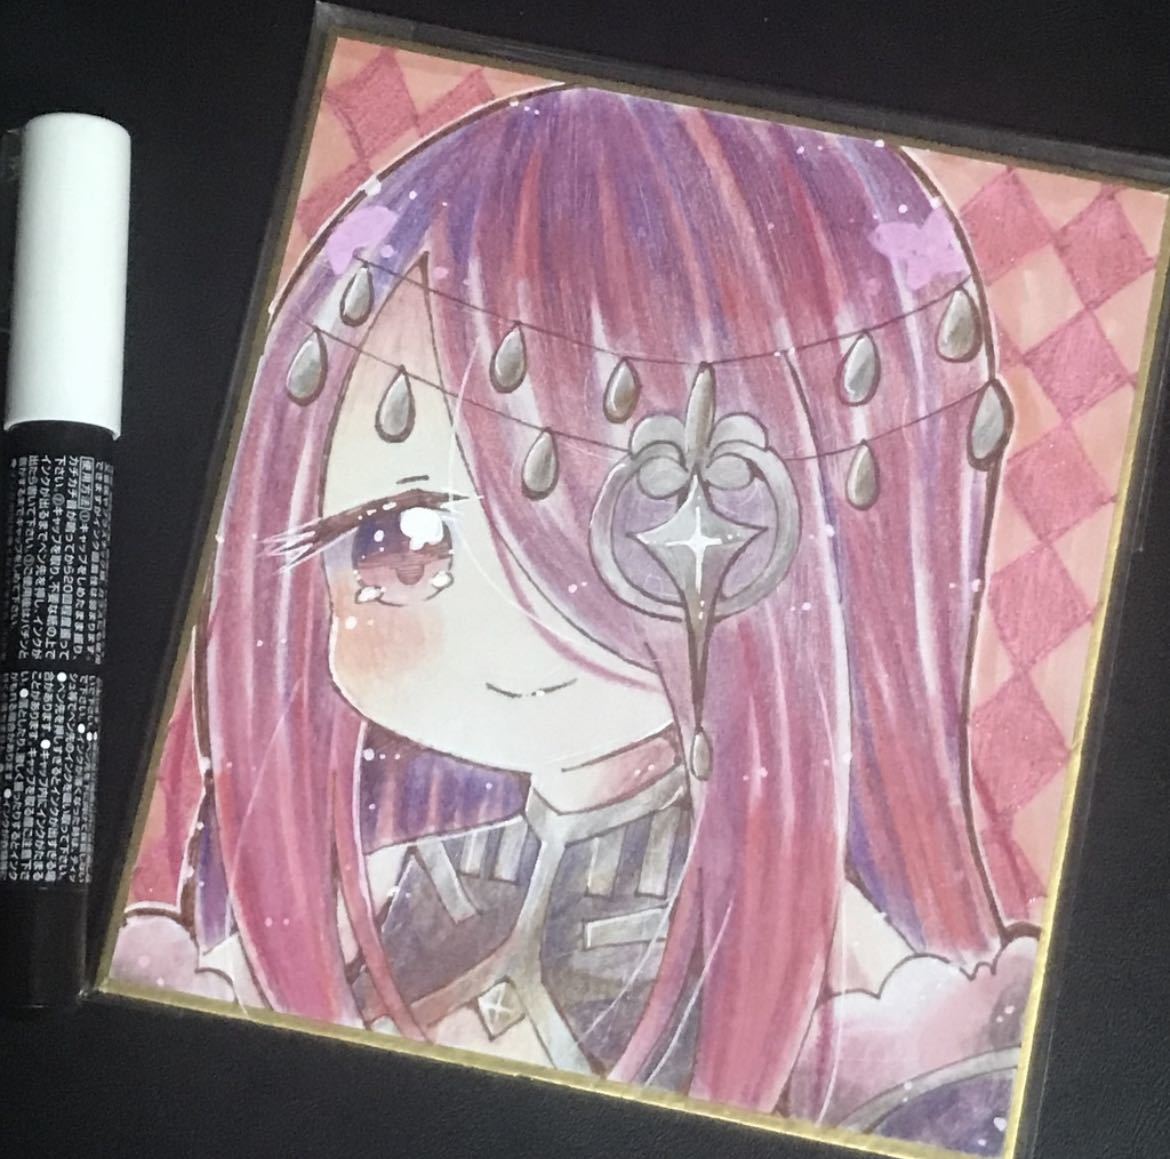 Handgezeichnete Illustration Doujinshi-Farbpapier Re:Zero Sekhmet handgezeichnetes Originalbild, Comics, Anime-Waren, handgezeichnete Illustration